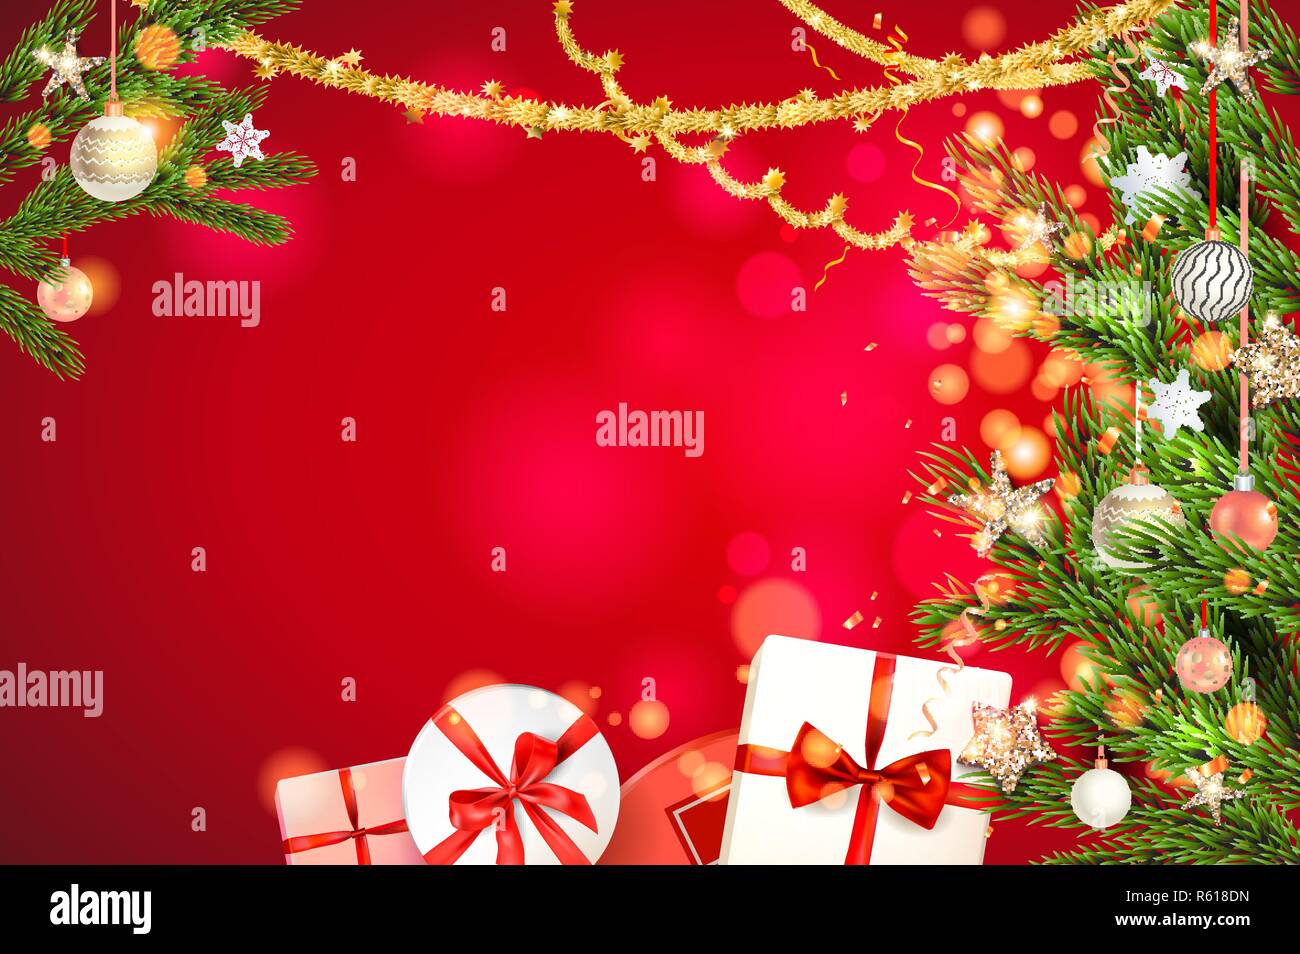 Rosso fata luminoso modello di sfondo con un bellissimo albero di Natale rami, Holiday decorazioni e scritte. Regali di natale, palline, stelle golden tinsel e coriandoli. Illustrazione Vettoriale